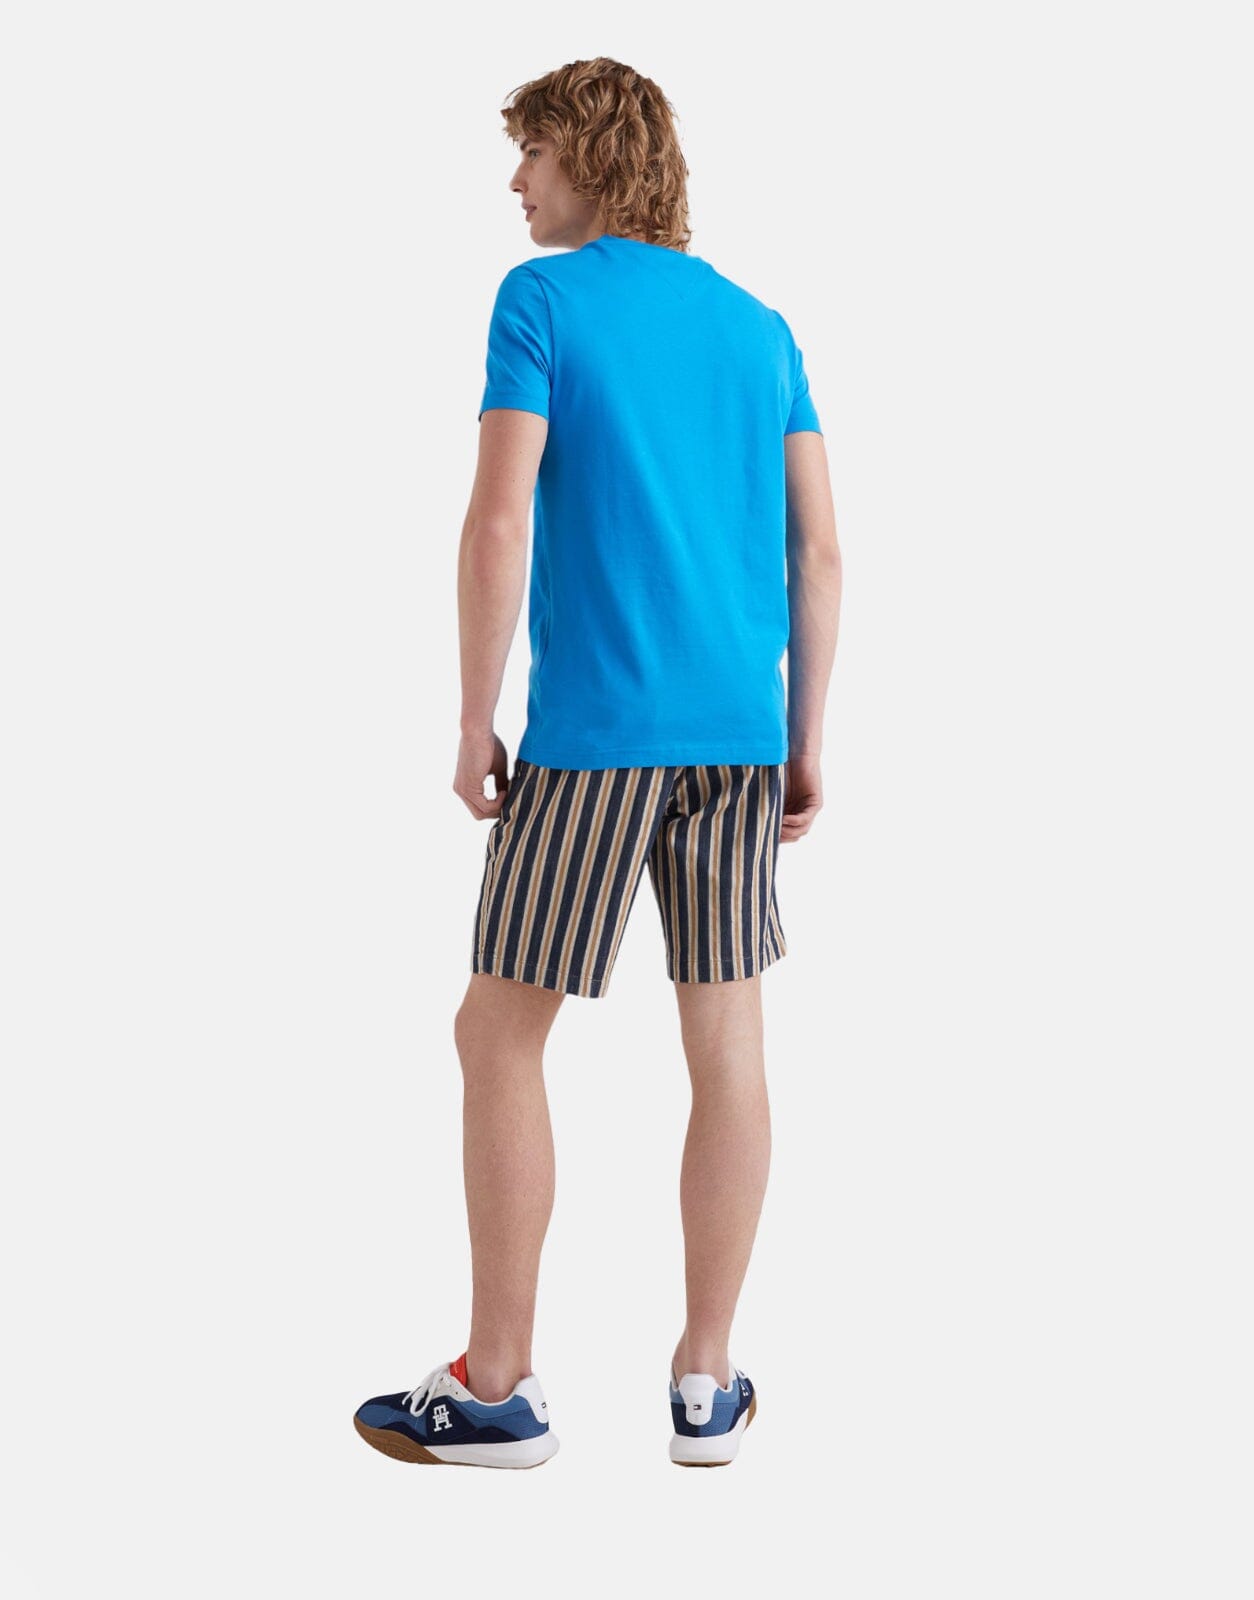 Tommy Hilfiger Logo T-Shirt Blue - Subwear